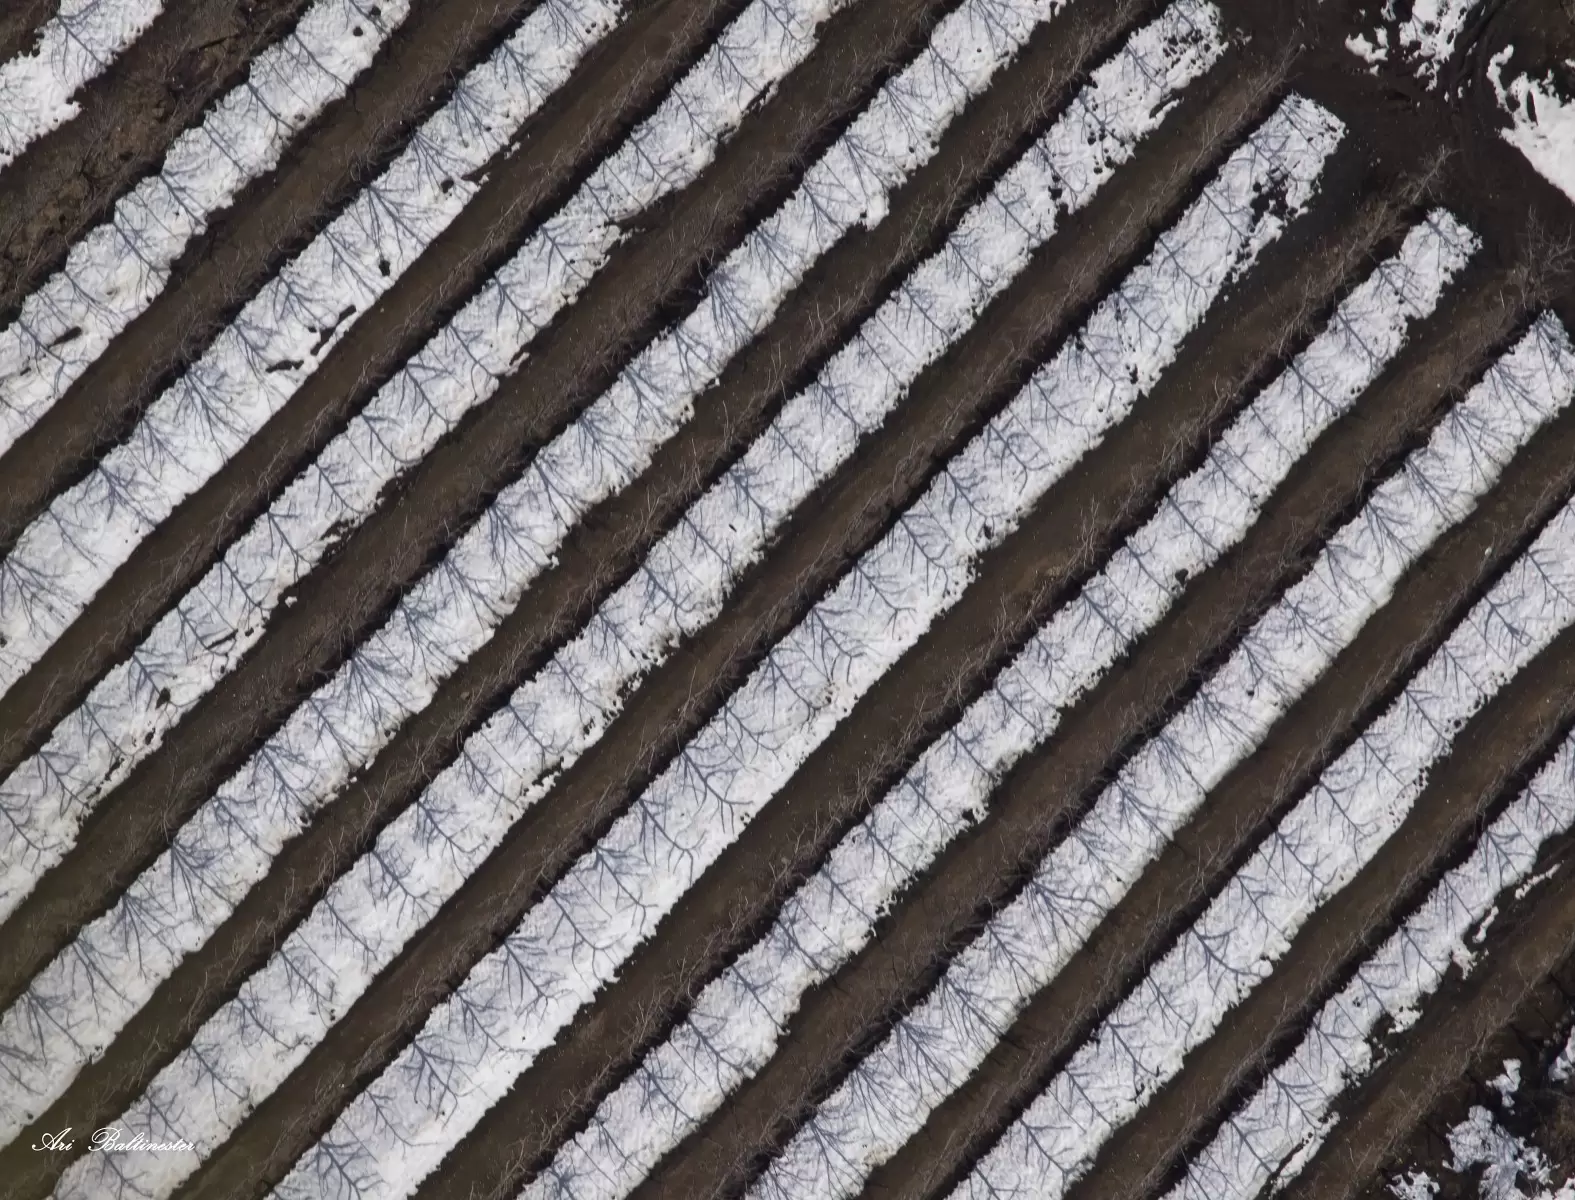 רישום בשלג - ארי בלטינשטר - צילום אווירי  - מק''ט: 219888